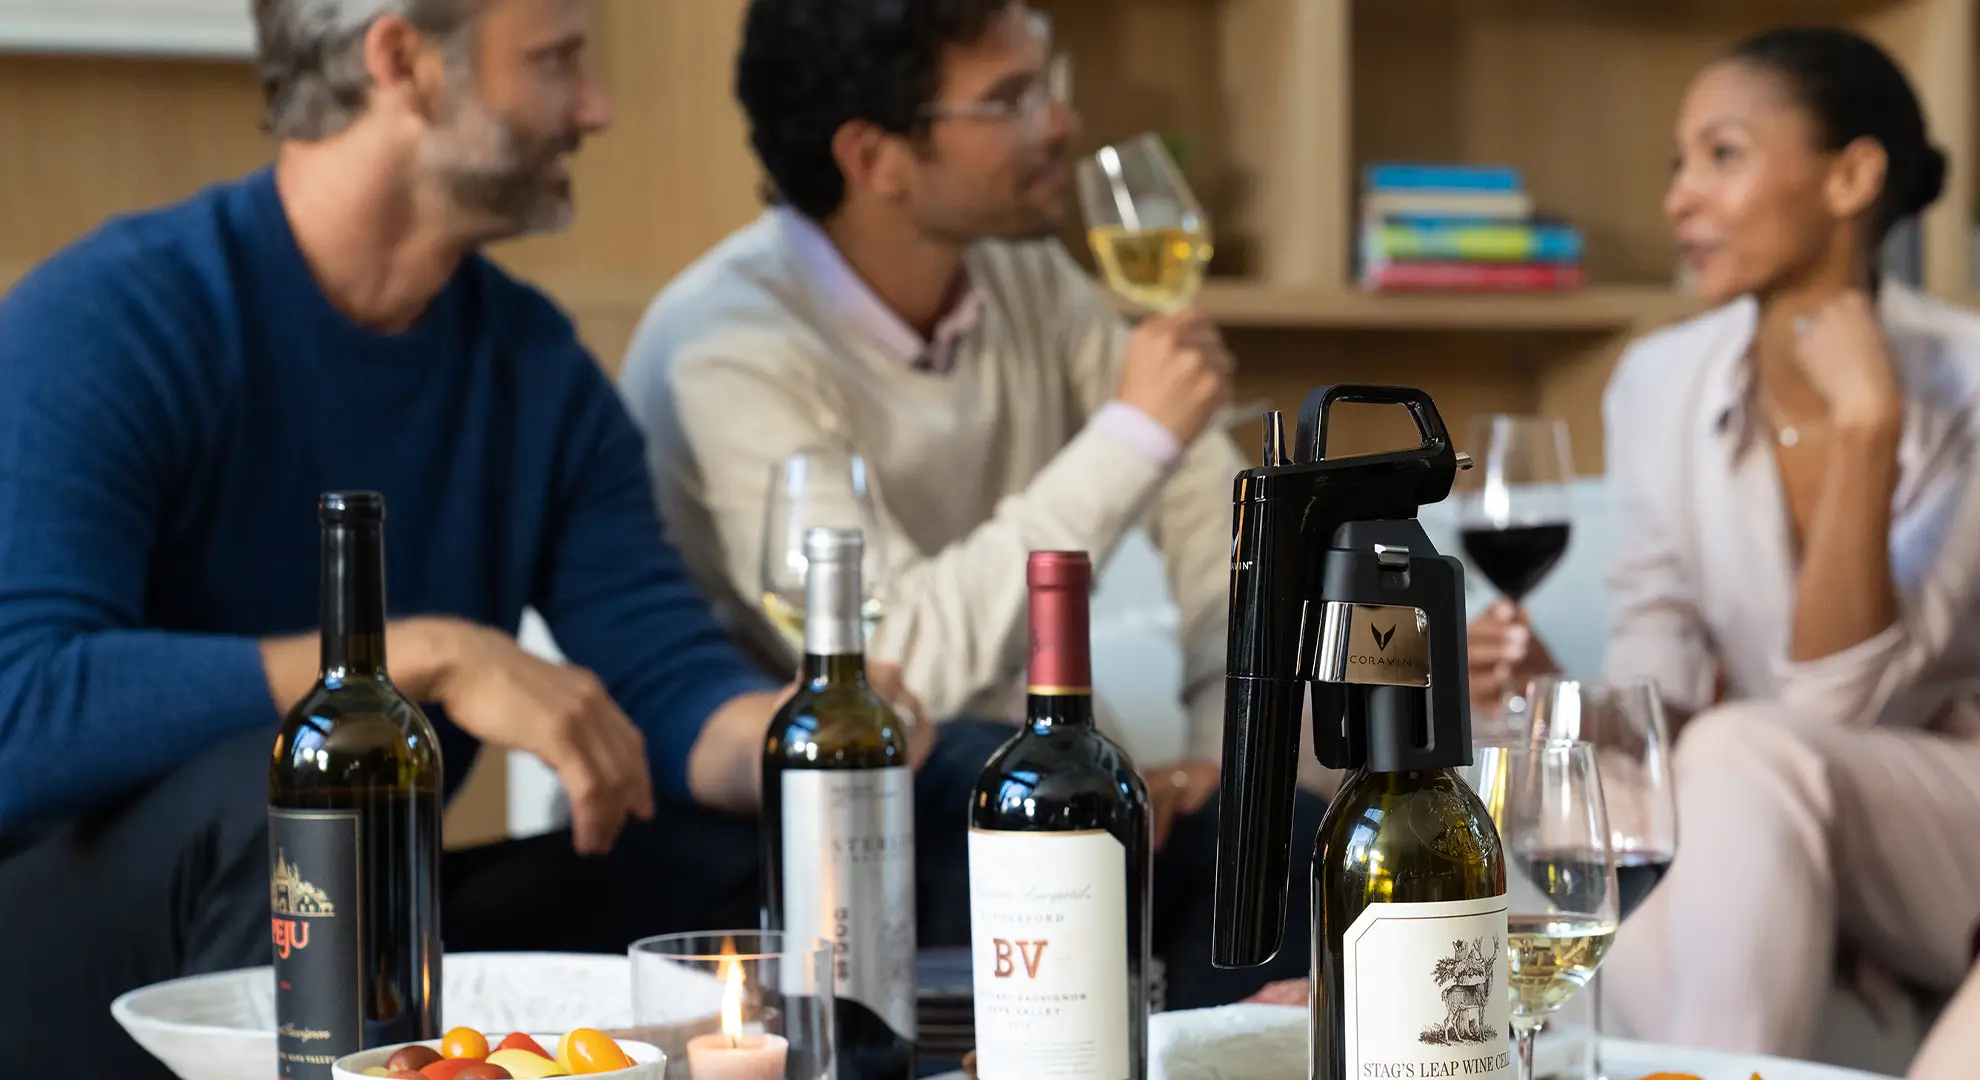 Eine Gruppe von Freunden in Wohnzimmer mit Wein und Fingerfood, im Vordergrund ein Coravin Weinsystem
